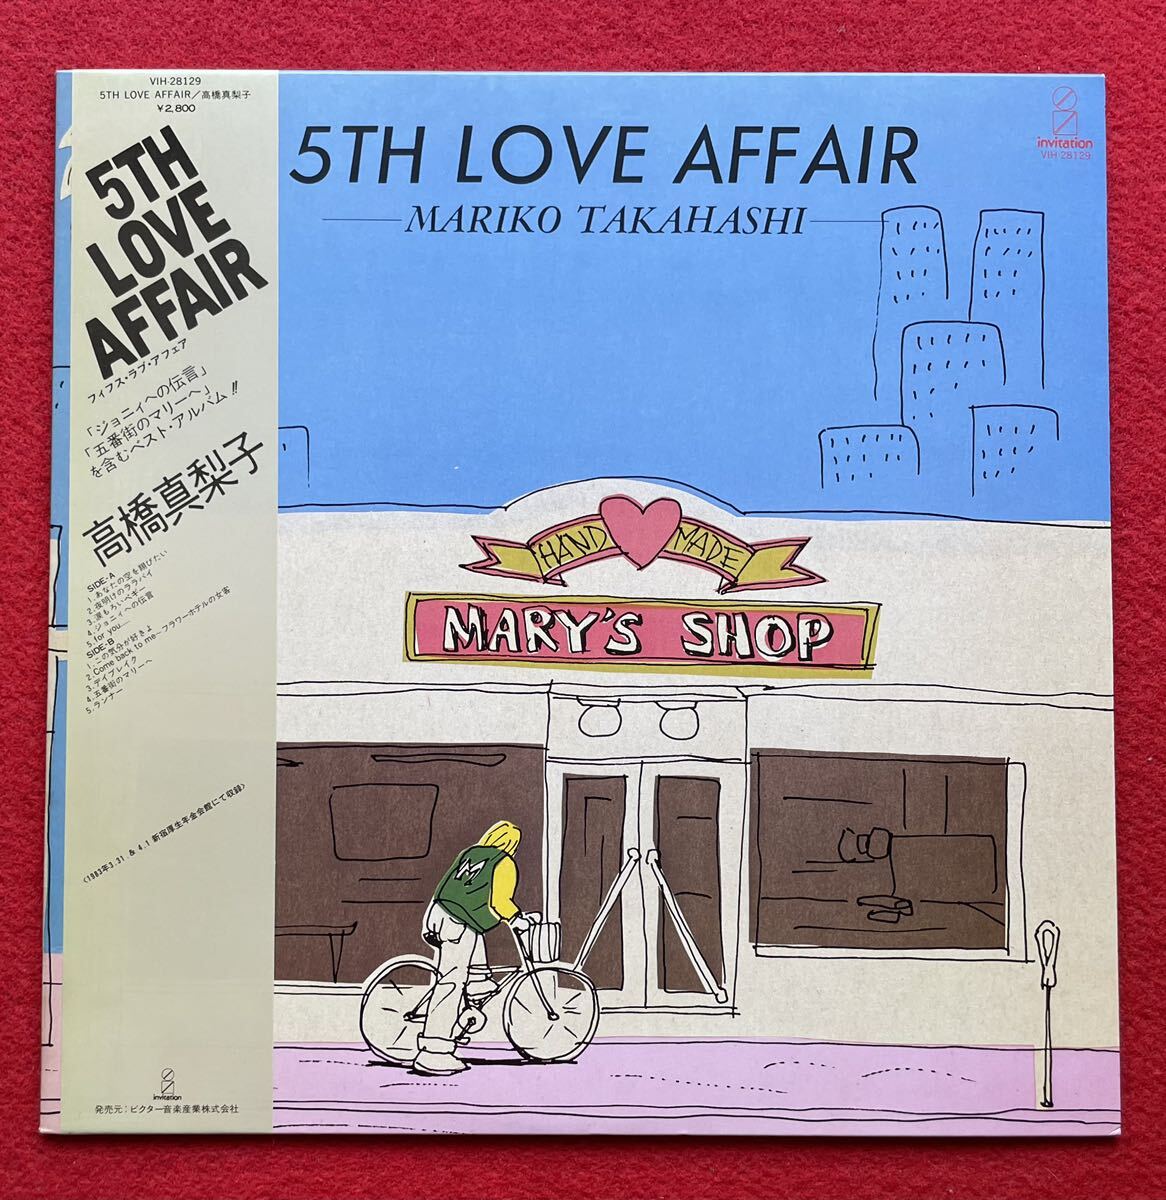 高橋真梨子 / 5th Love Affair (帯付) 12inch盤その他にもプロモーション盤 レア盤 人気レコード 多数出品。の画像1